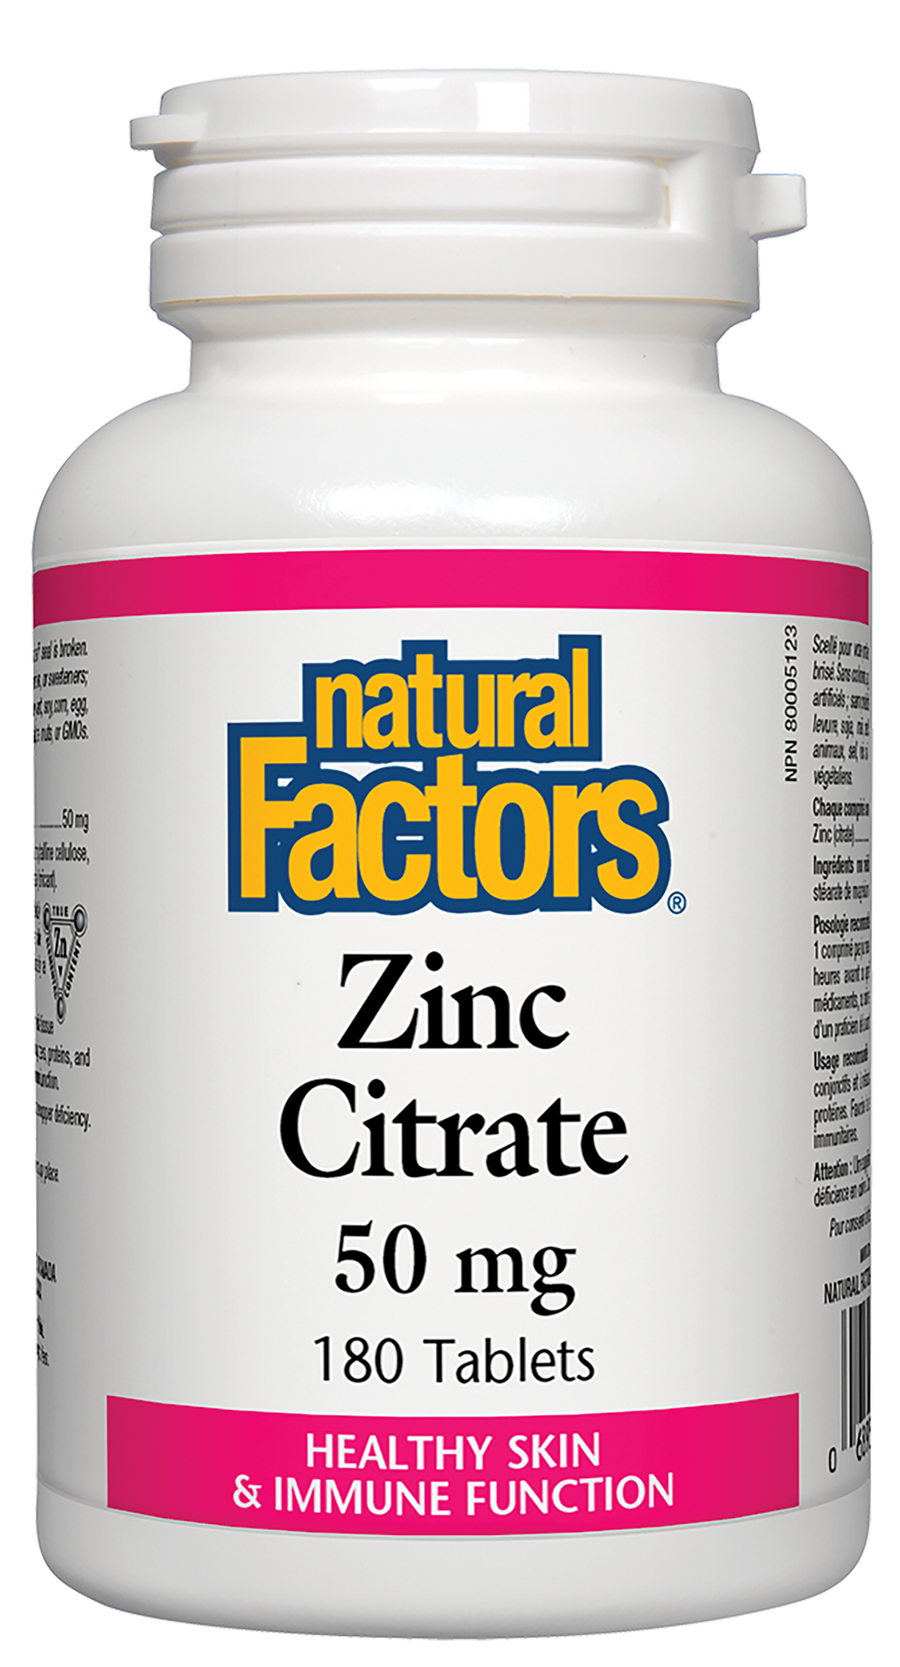 Natural Factors Zinc Citrate 50 mg 180 Tablets